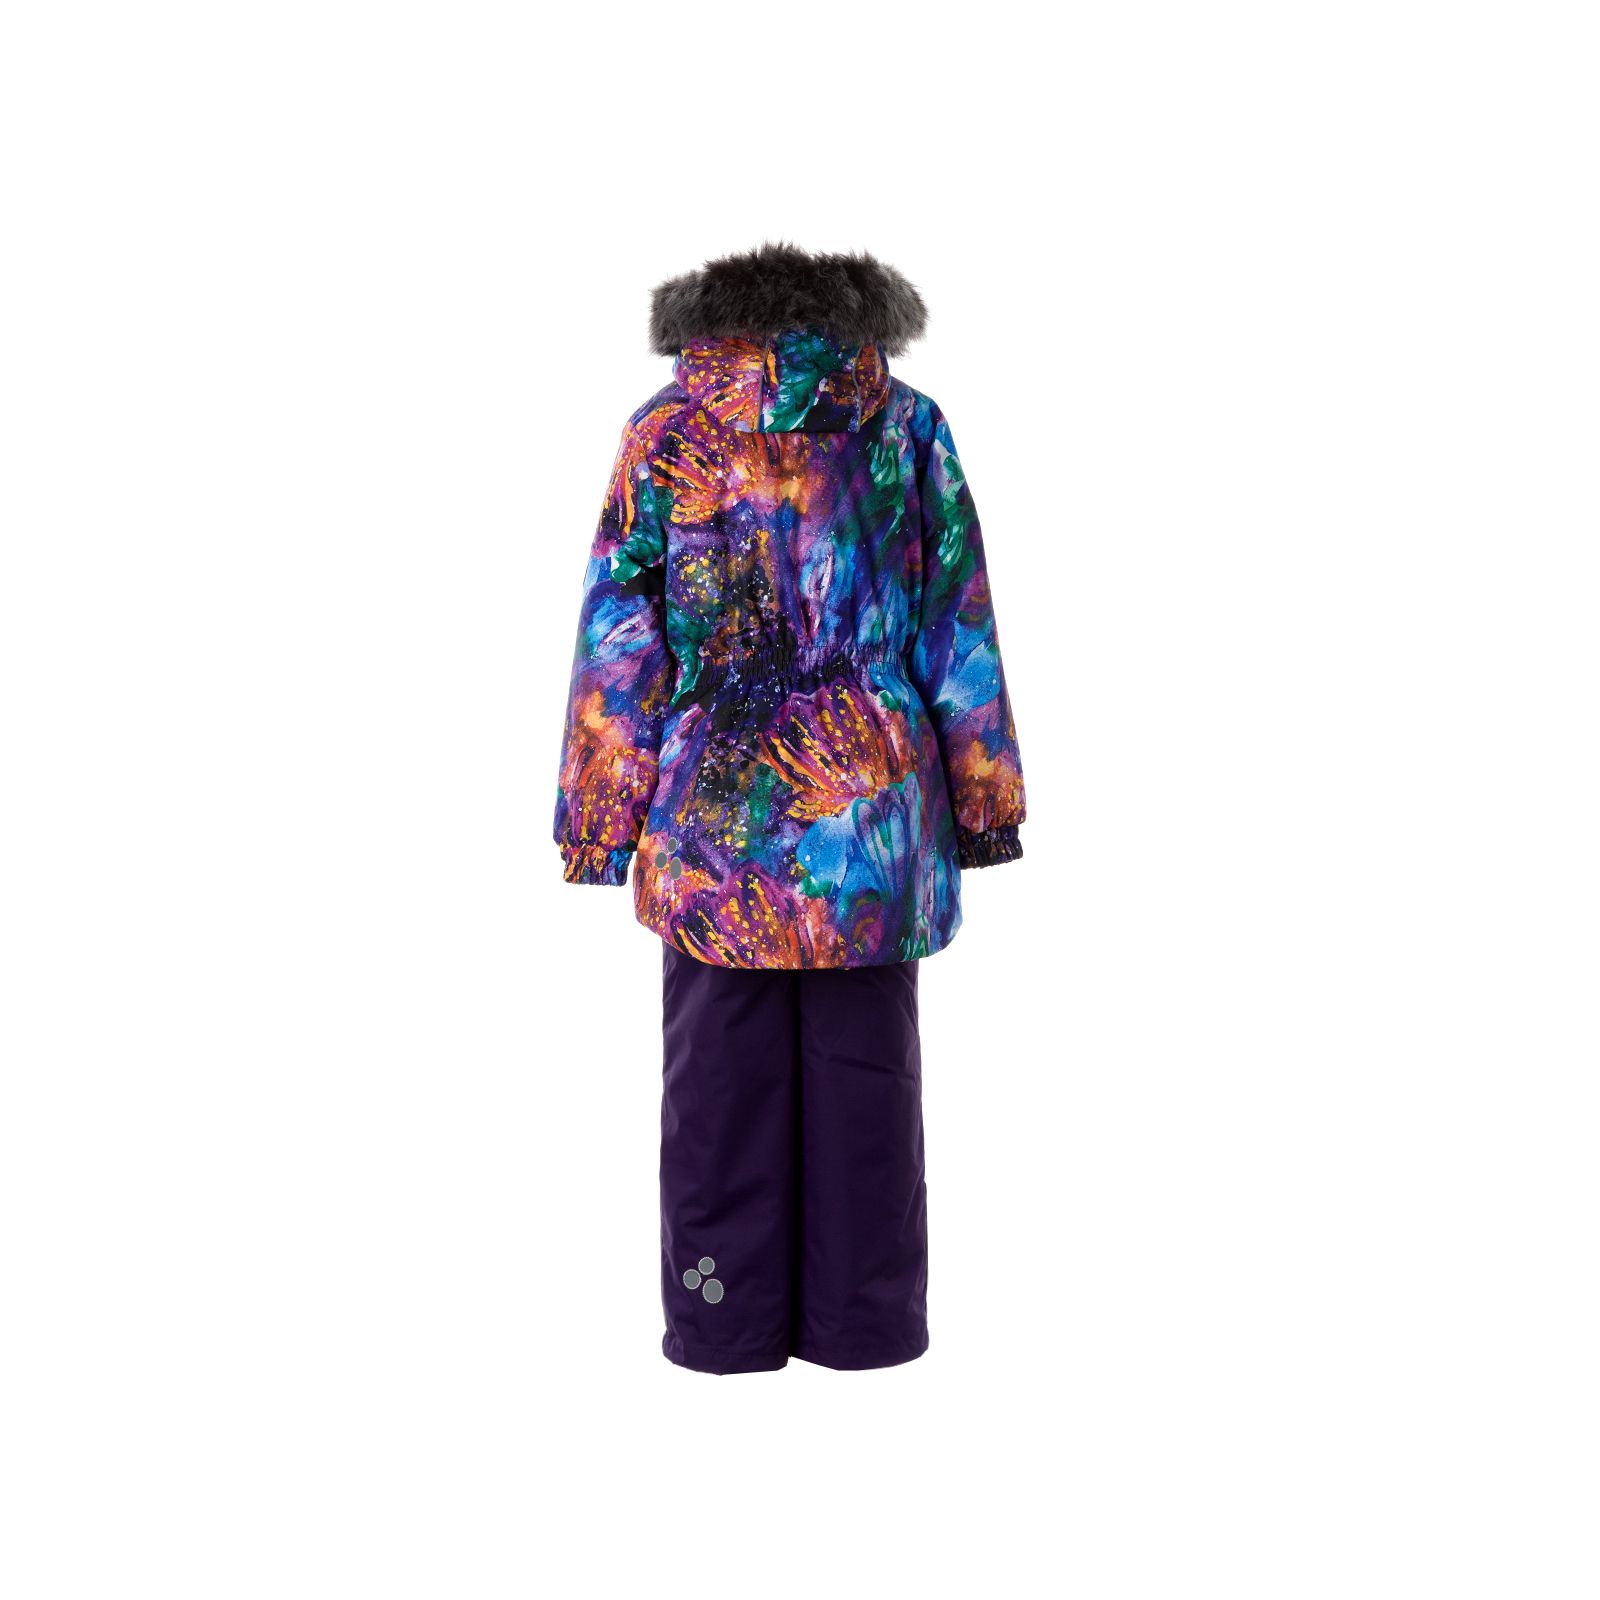 Комплект верхней одежды Huppa RENELY 2 41850230 пурпур с принтом/тёмно-лилoвый 98 (4741468979007) изображение 2